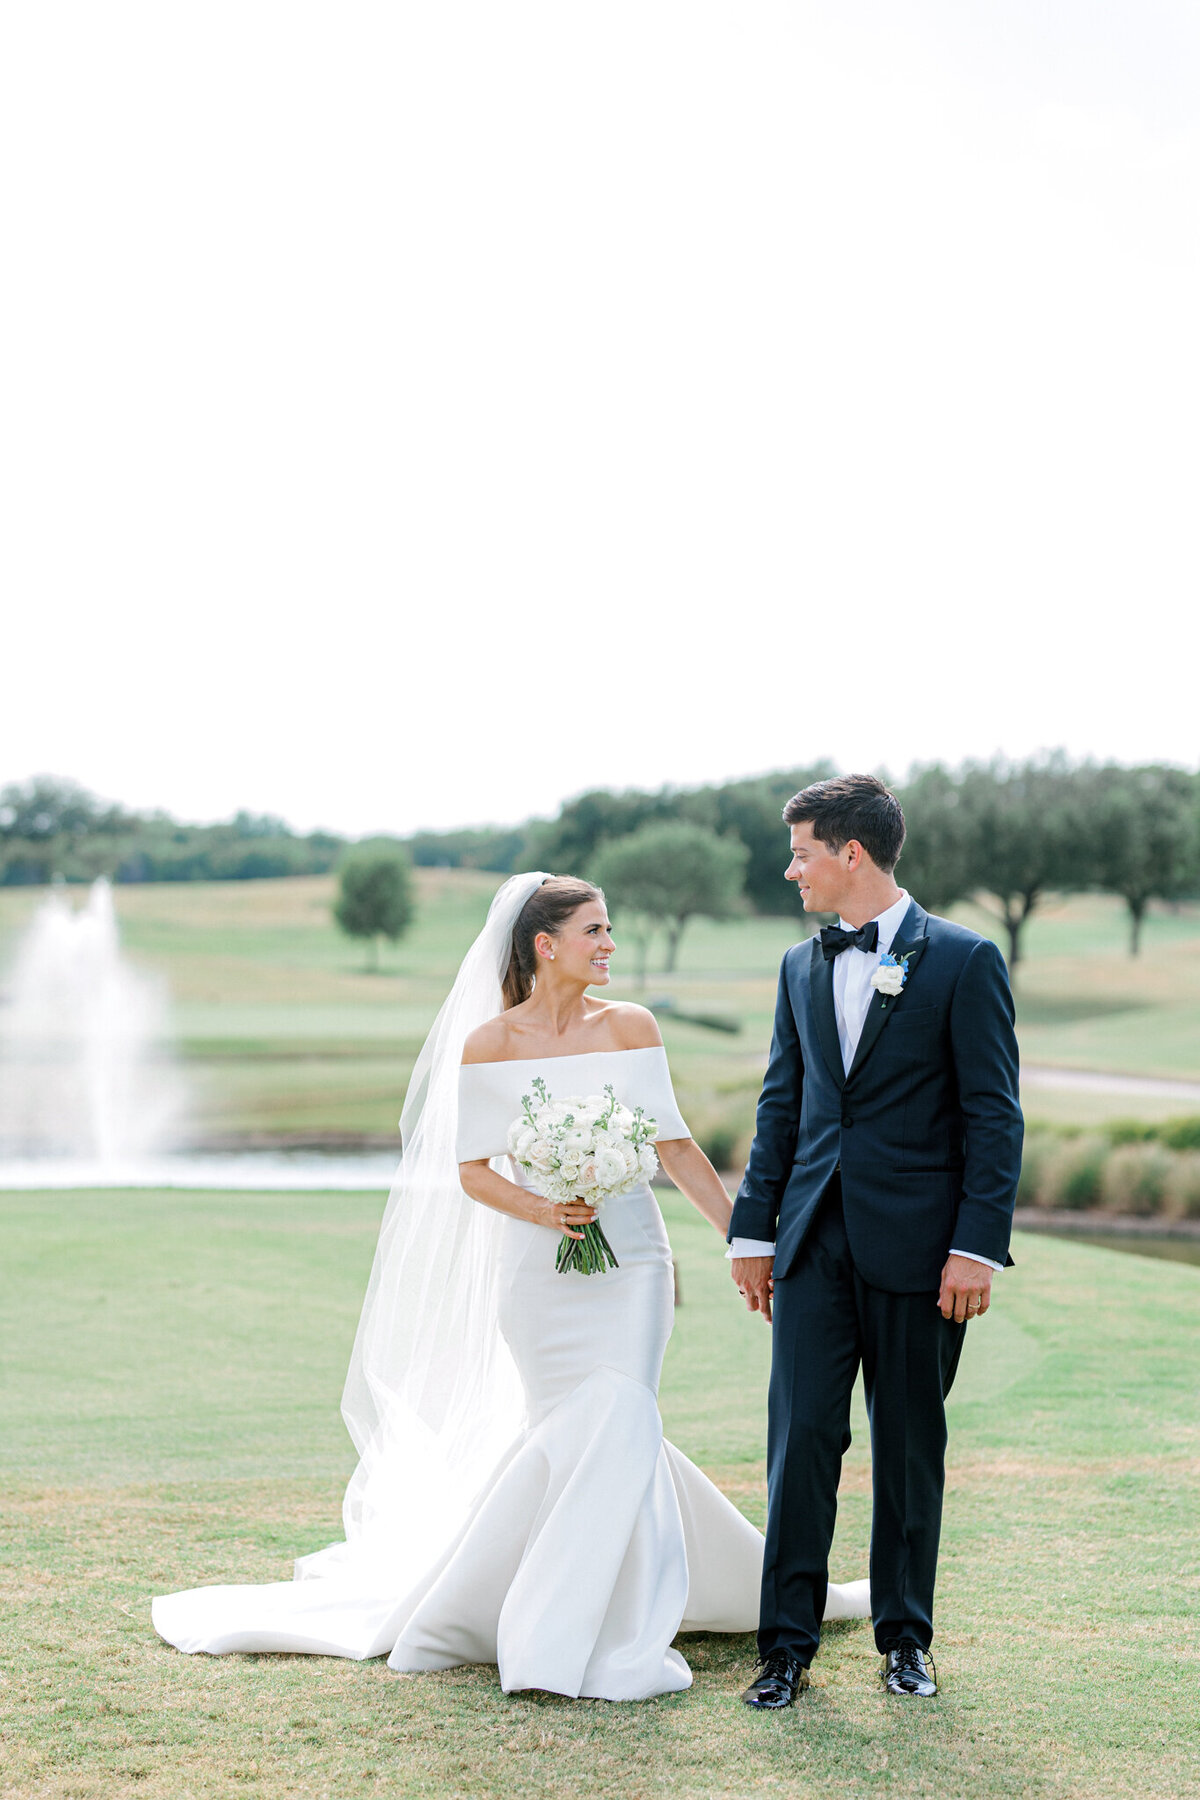 Annie & Logan's Wedding | Dallas Wedding Photographer | Sami Kathryn Photography-144